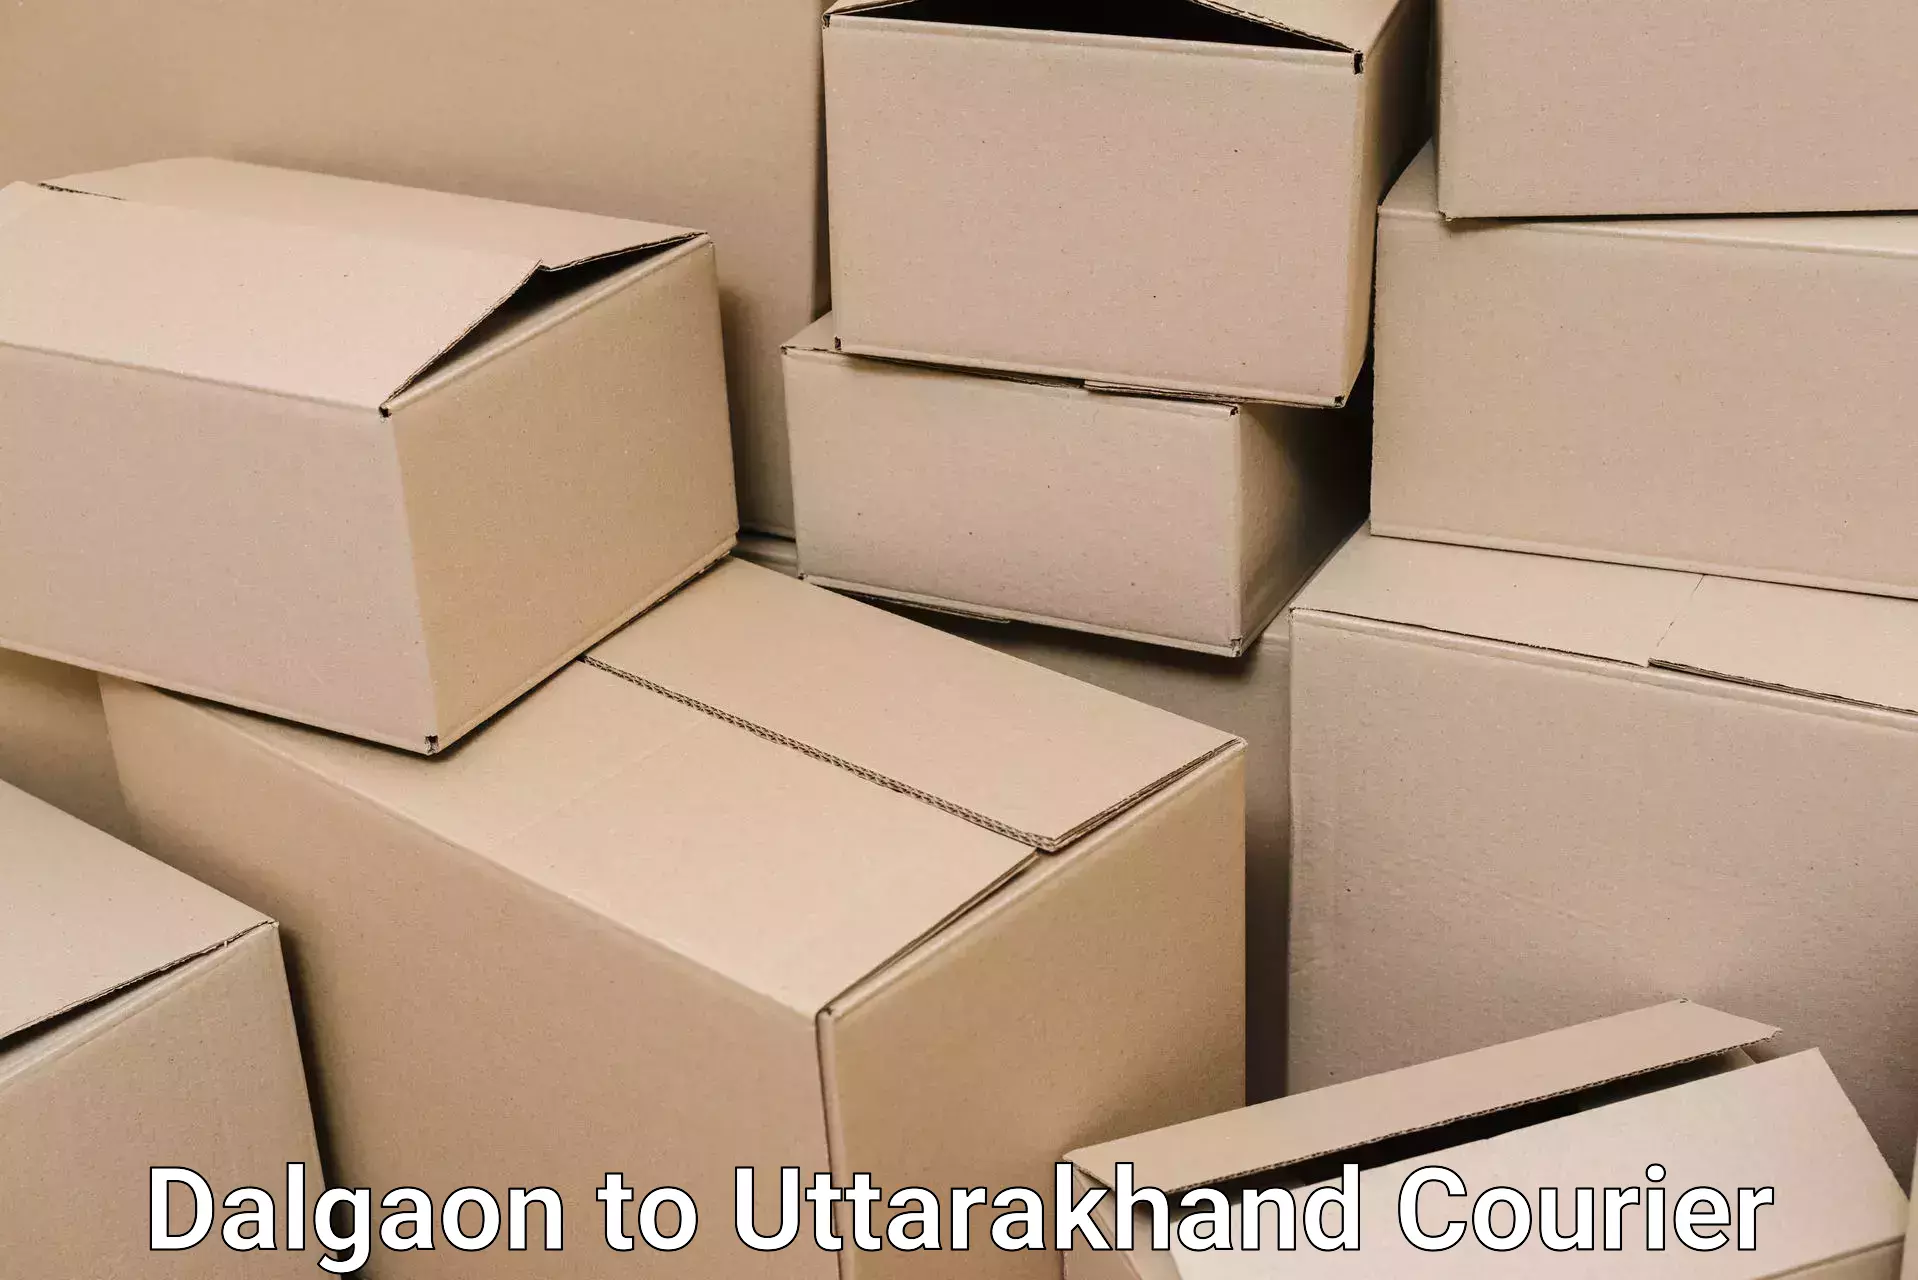 Professional moving assistance Dalgaon to Uttarakhand